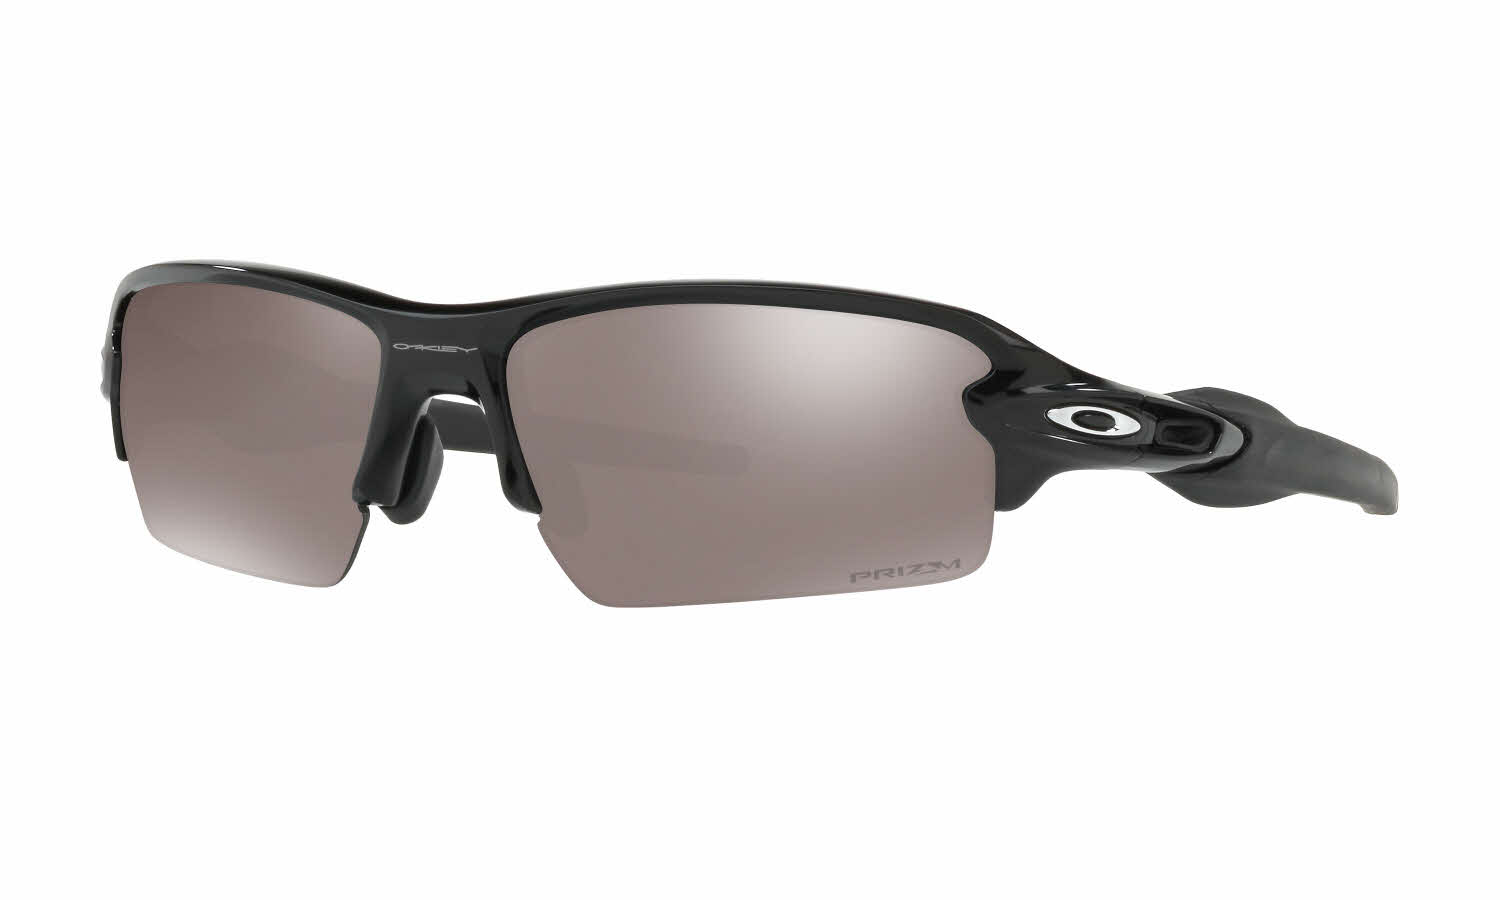 Polarized Half Frame Sunglasses For Men And Women OO9271 Designer